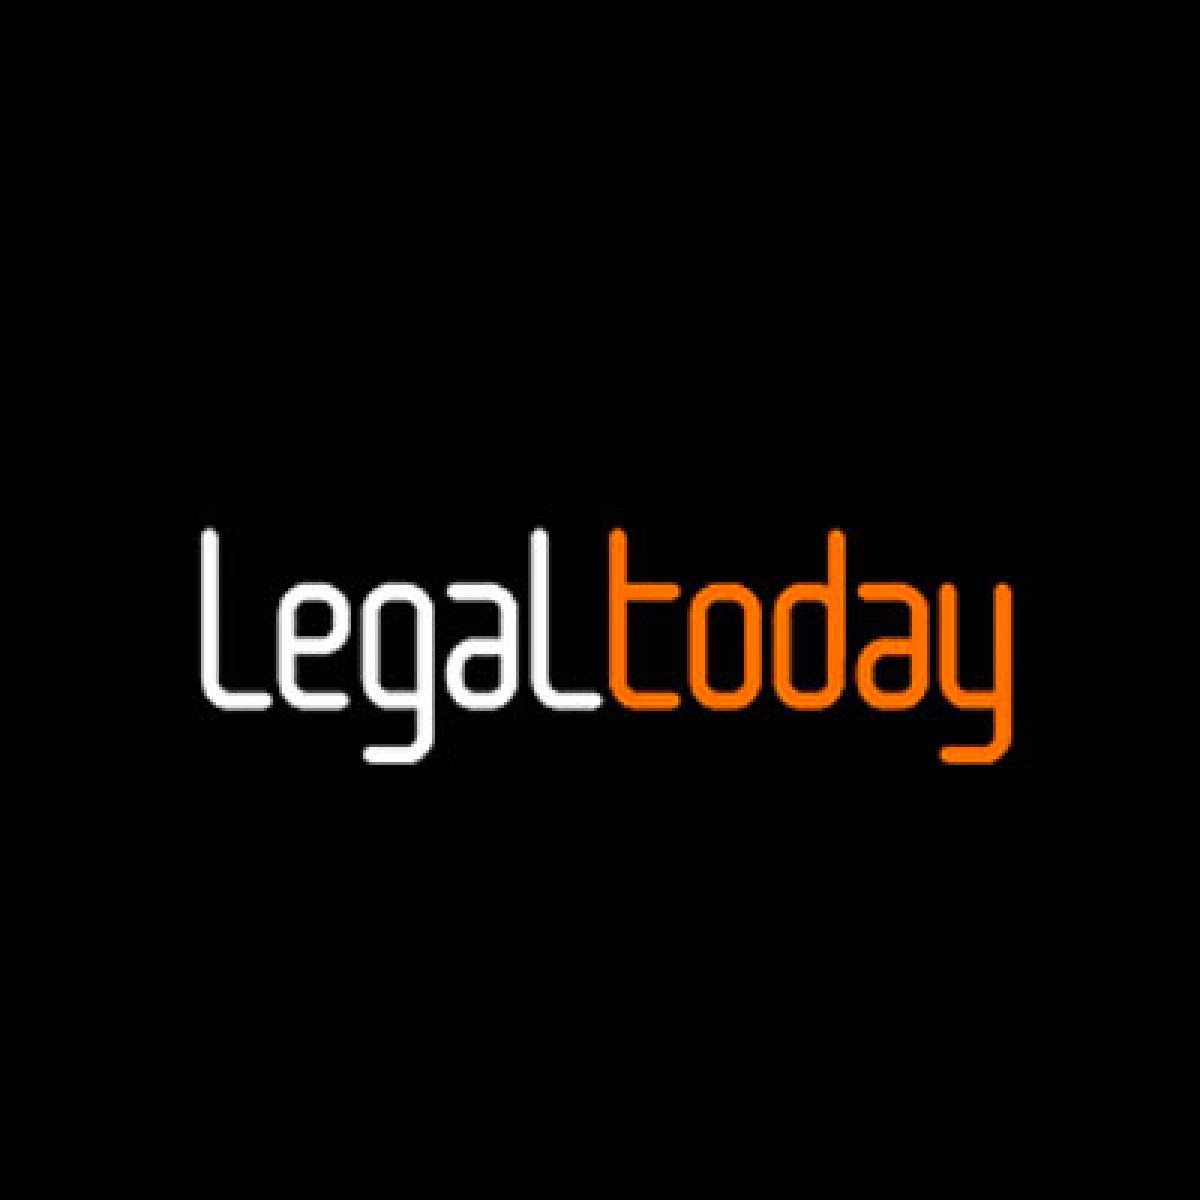 Publicación en la web Legal Today